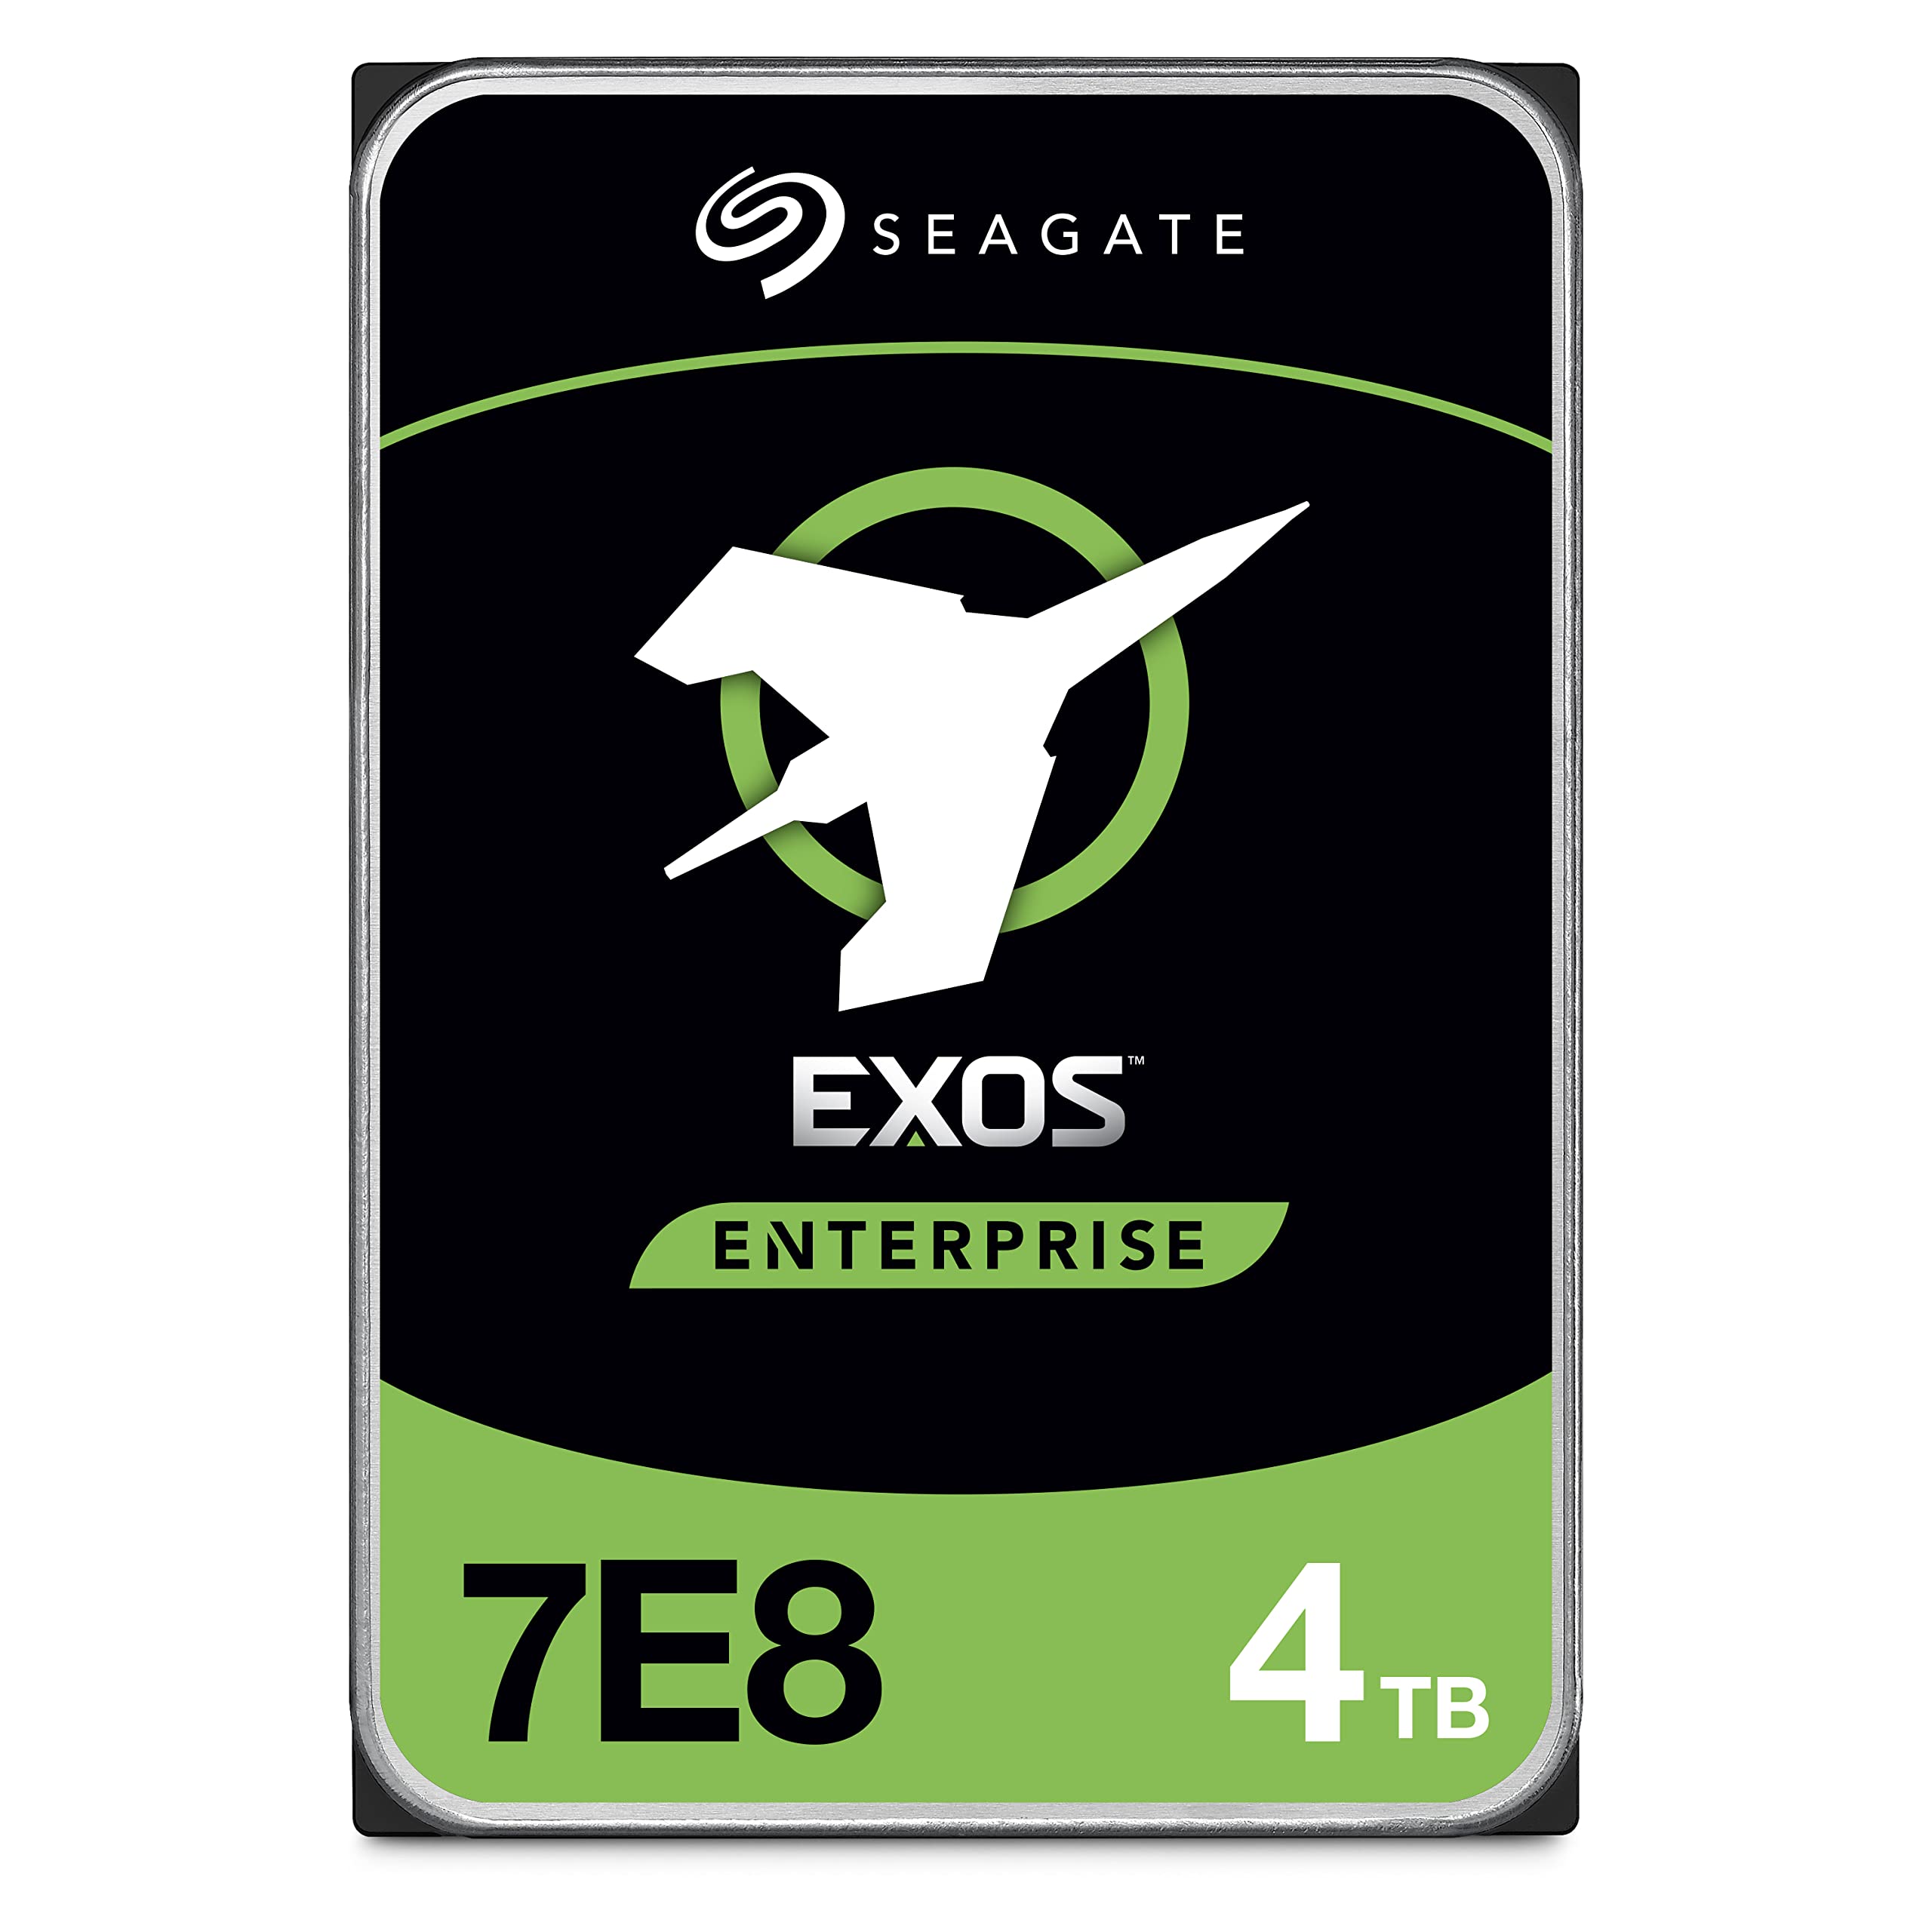 Seagate Exos 7E8 SATA 512E CMR 内蔵ハードディスク 3.5 4TB 5年削除削除品ST4000NM002A